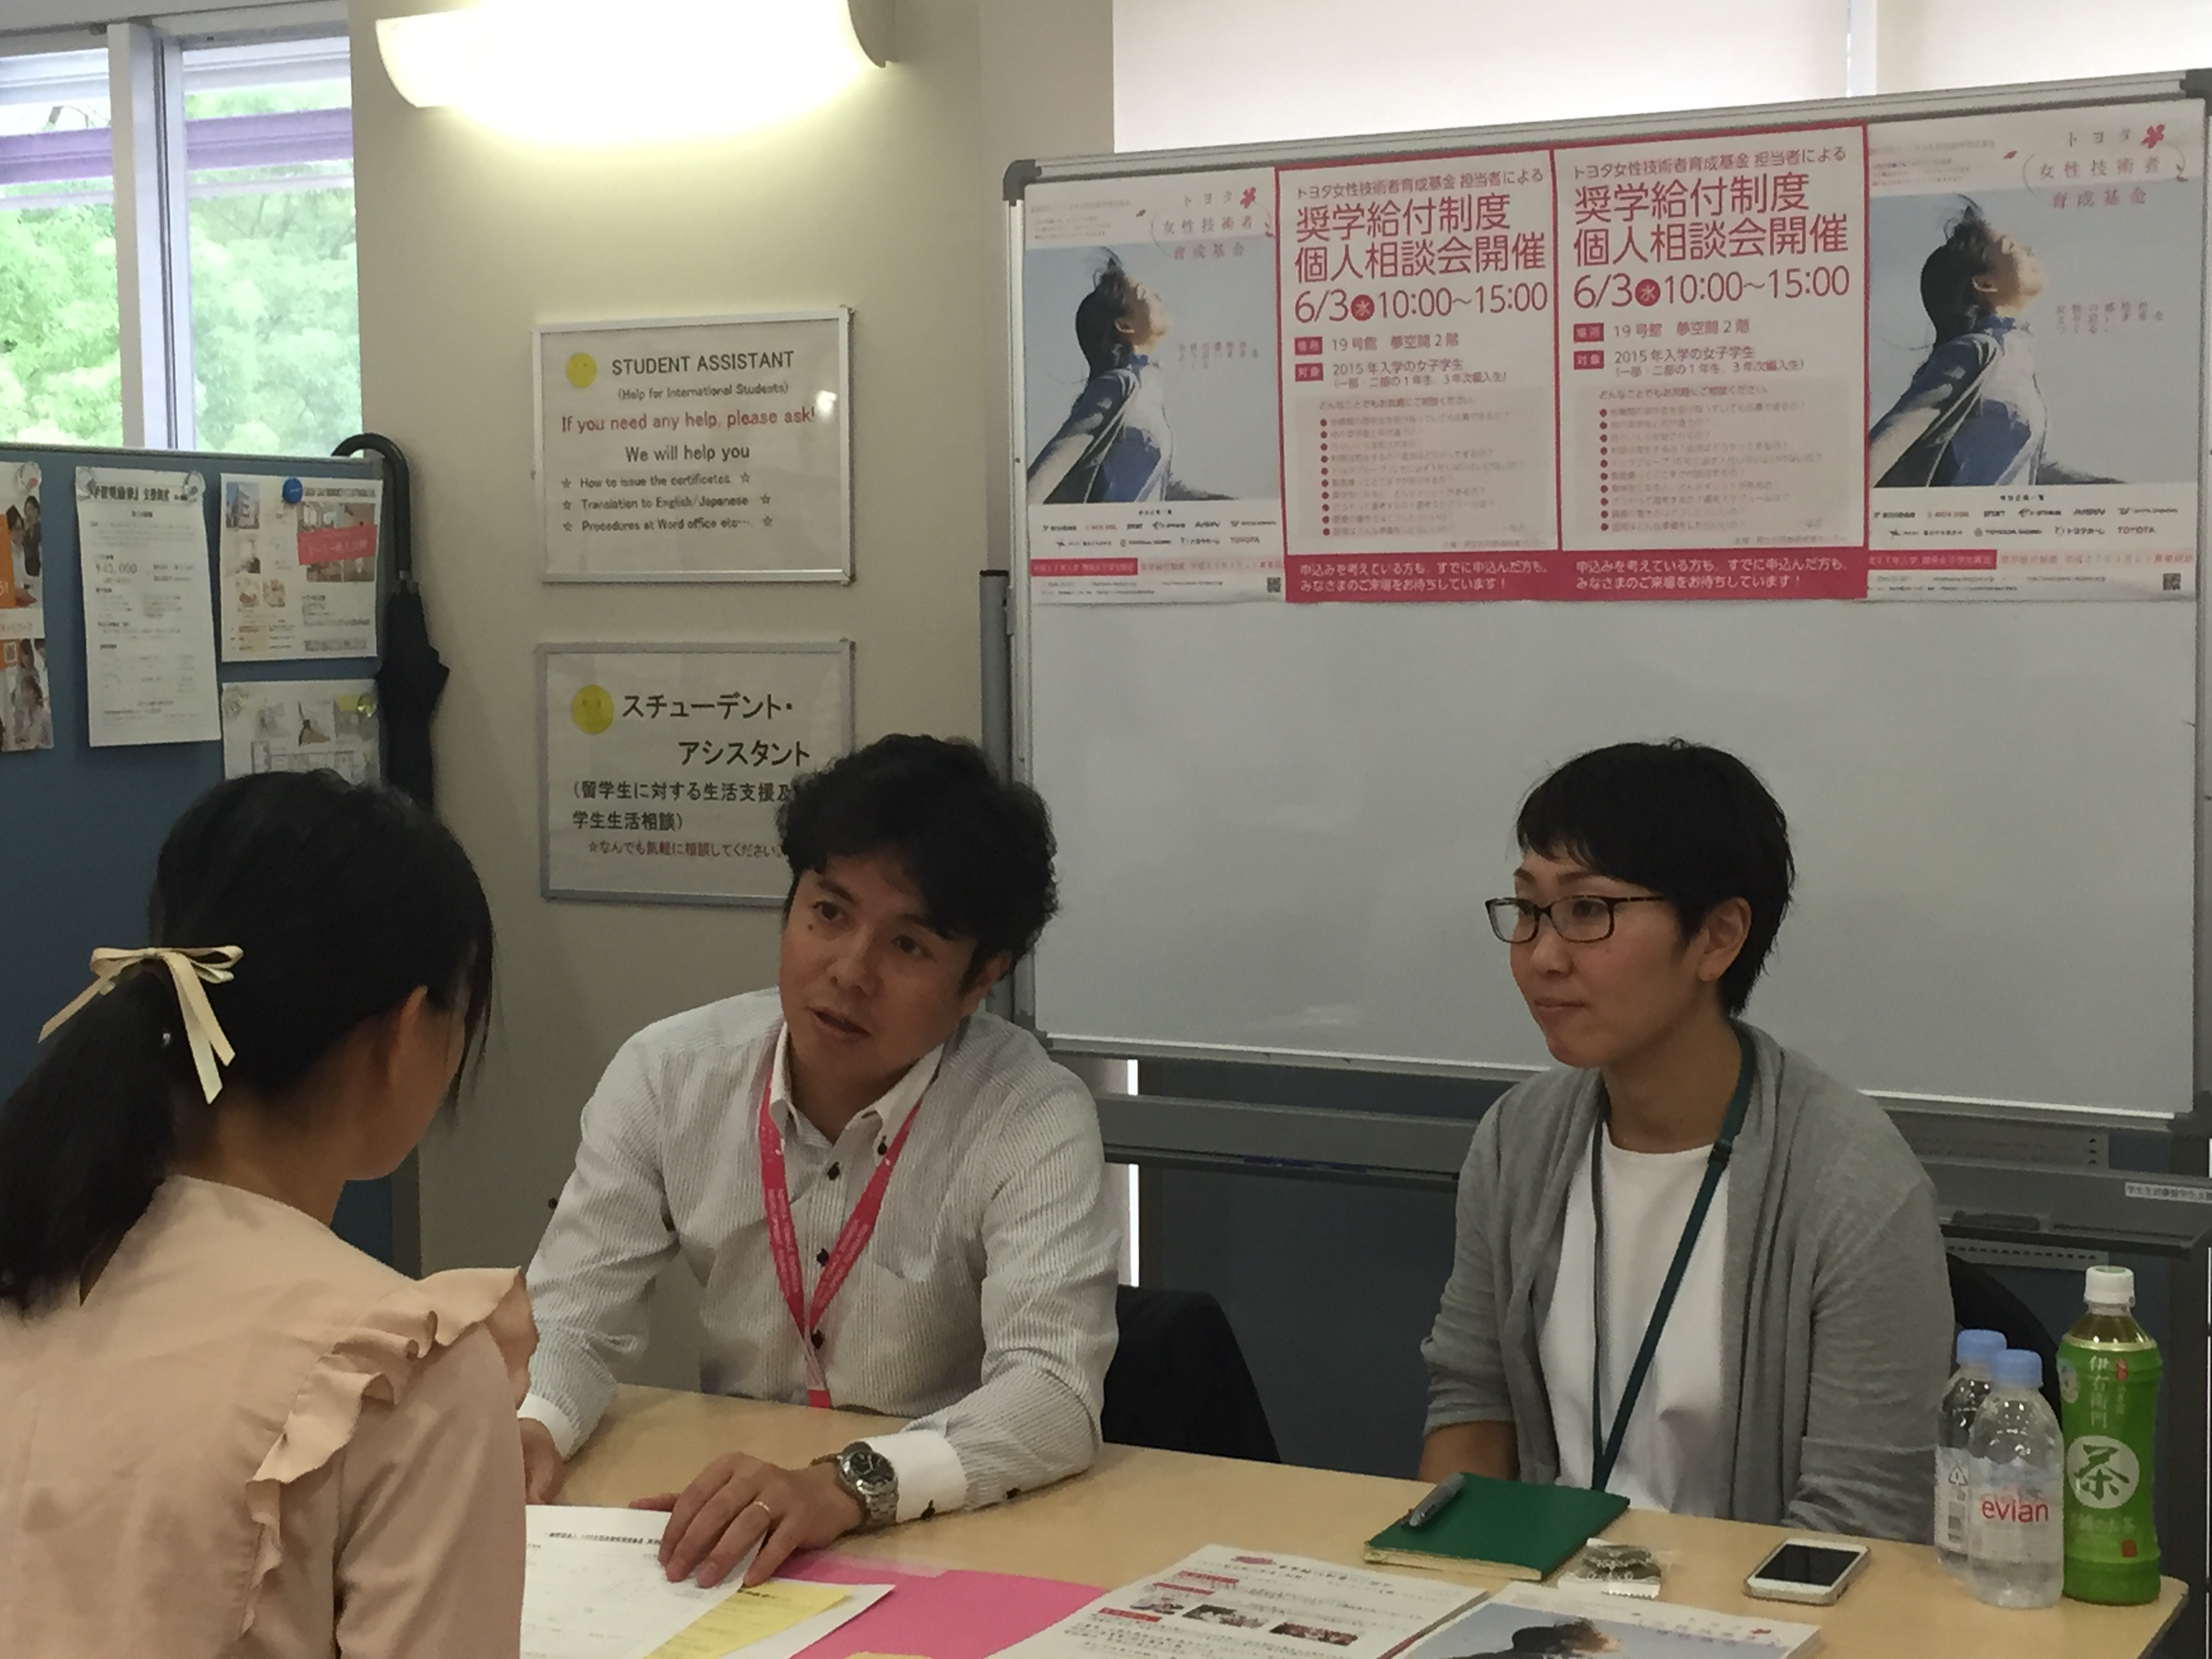 トヨタ女性技術者育成基金担当者による個人相談会を実施しました 名古屋工業大学 ダイバーシティ推進センター